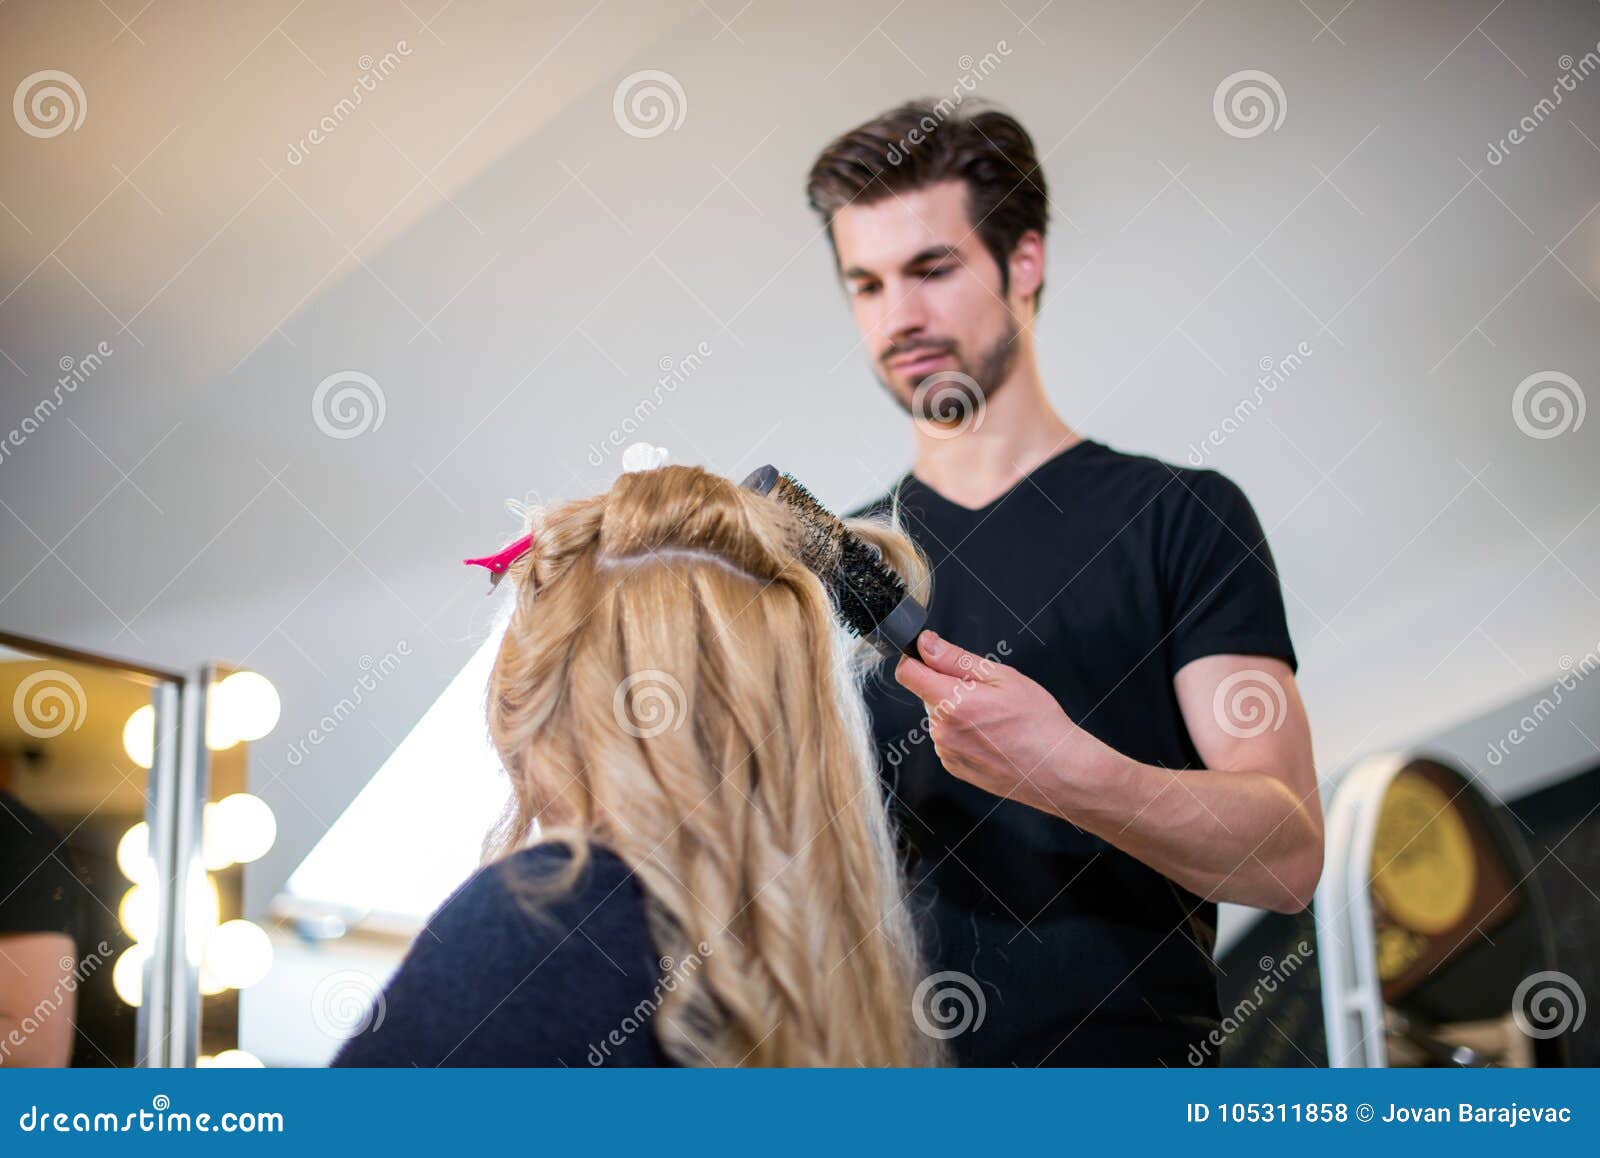 hairdresser and blonde cliente